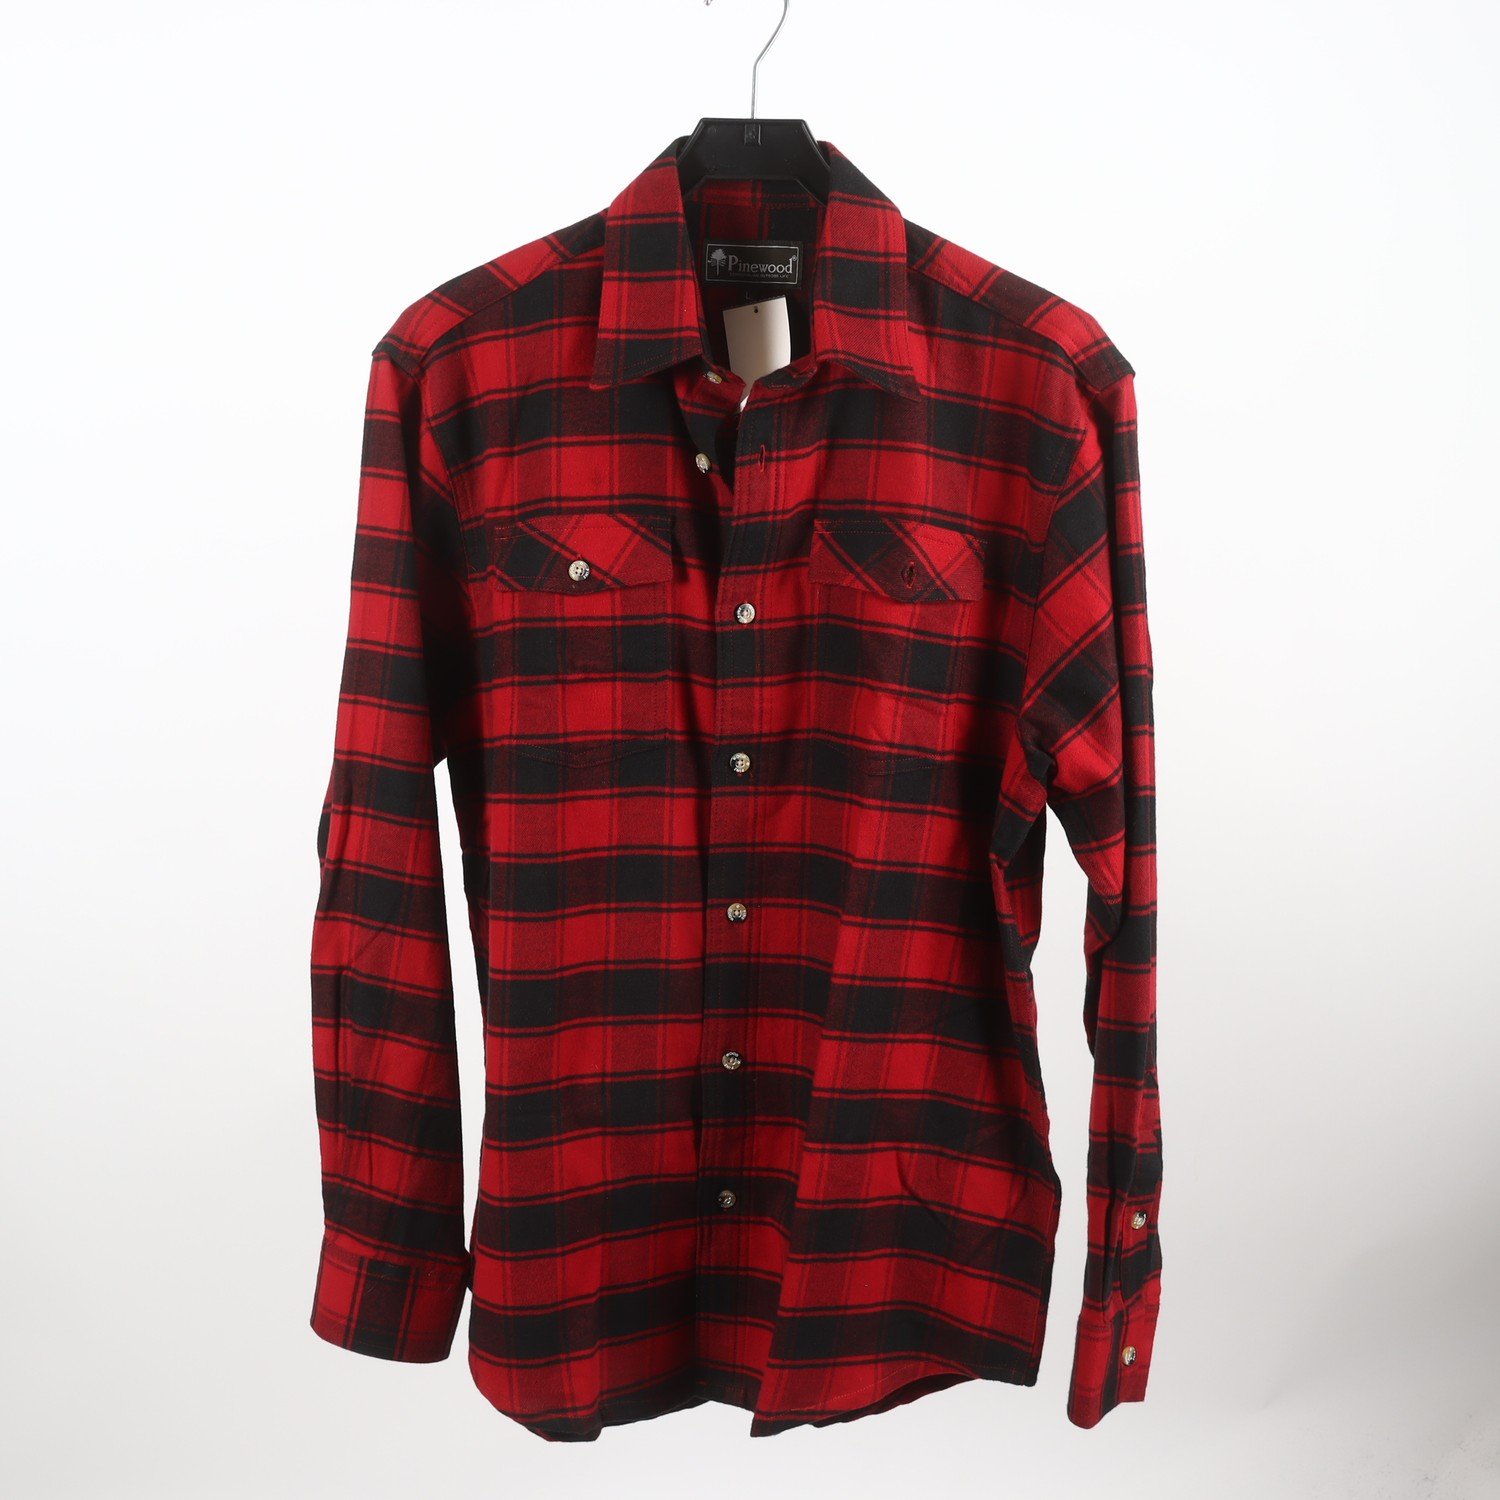 Skjorta, Pinewood, röd, svart, stl. L